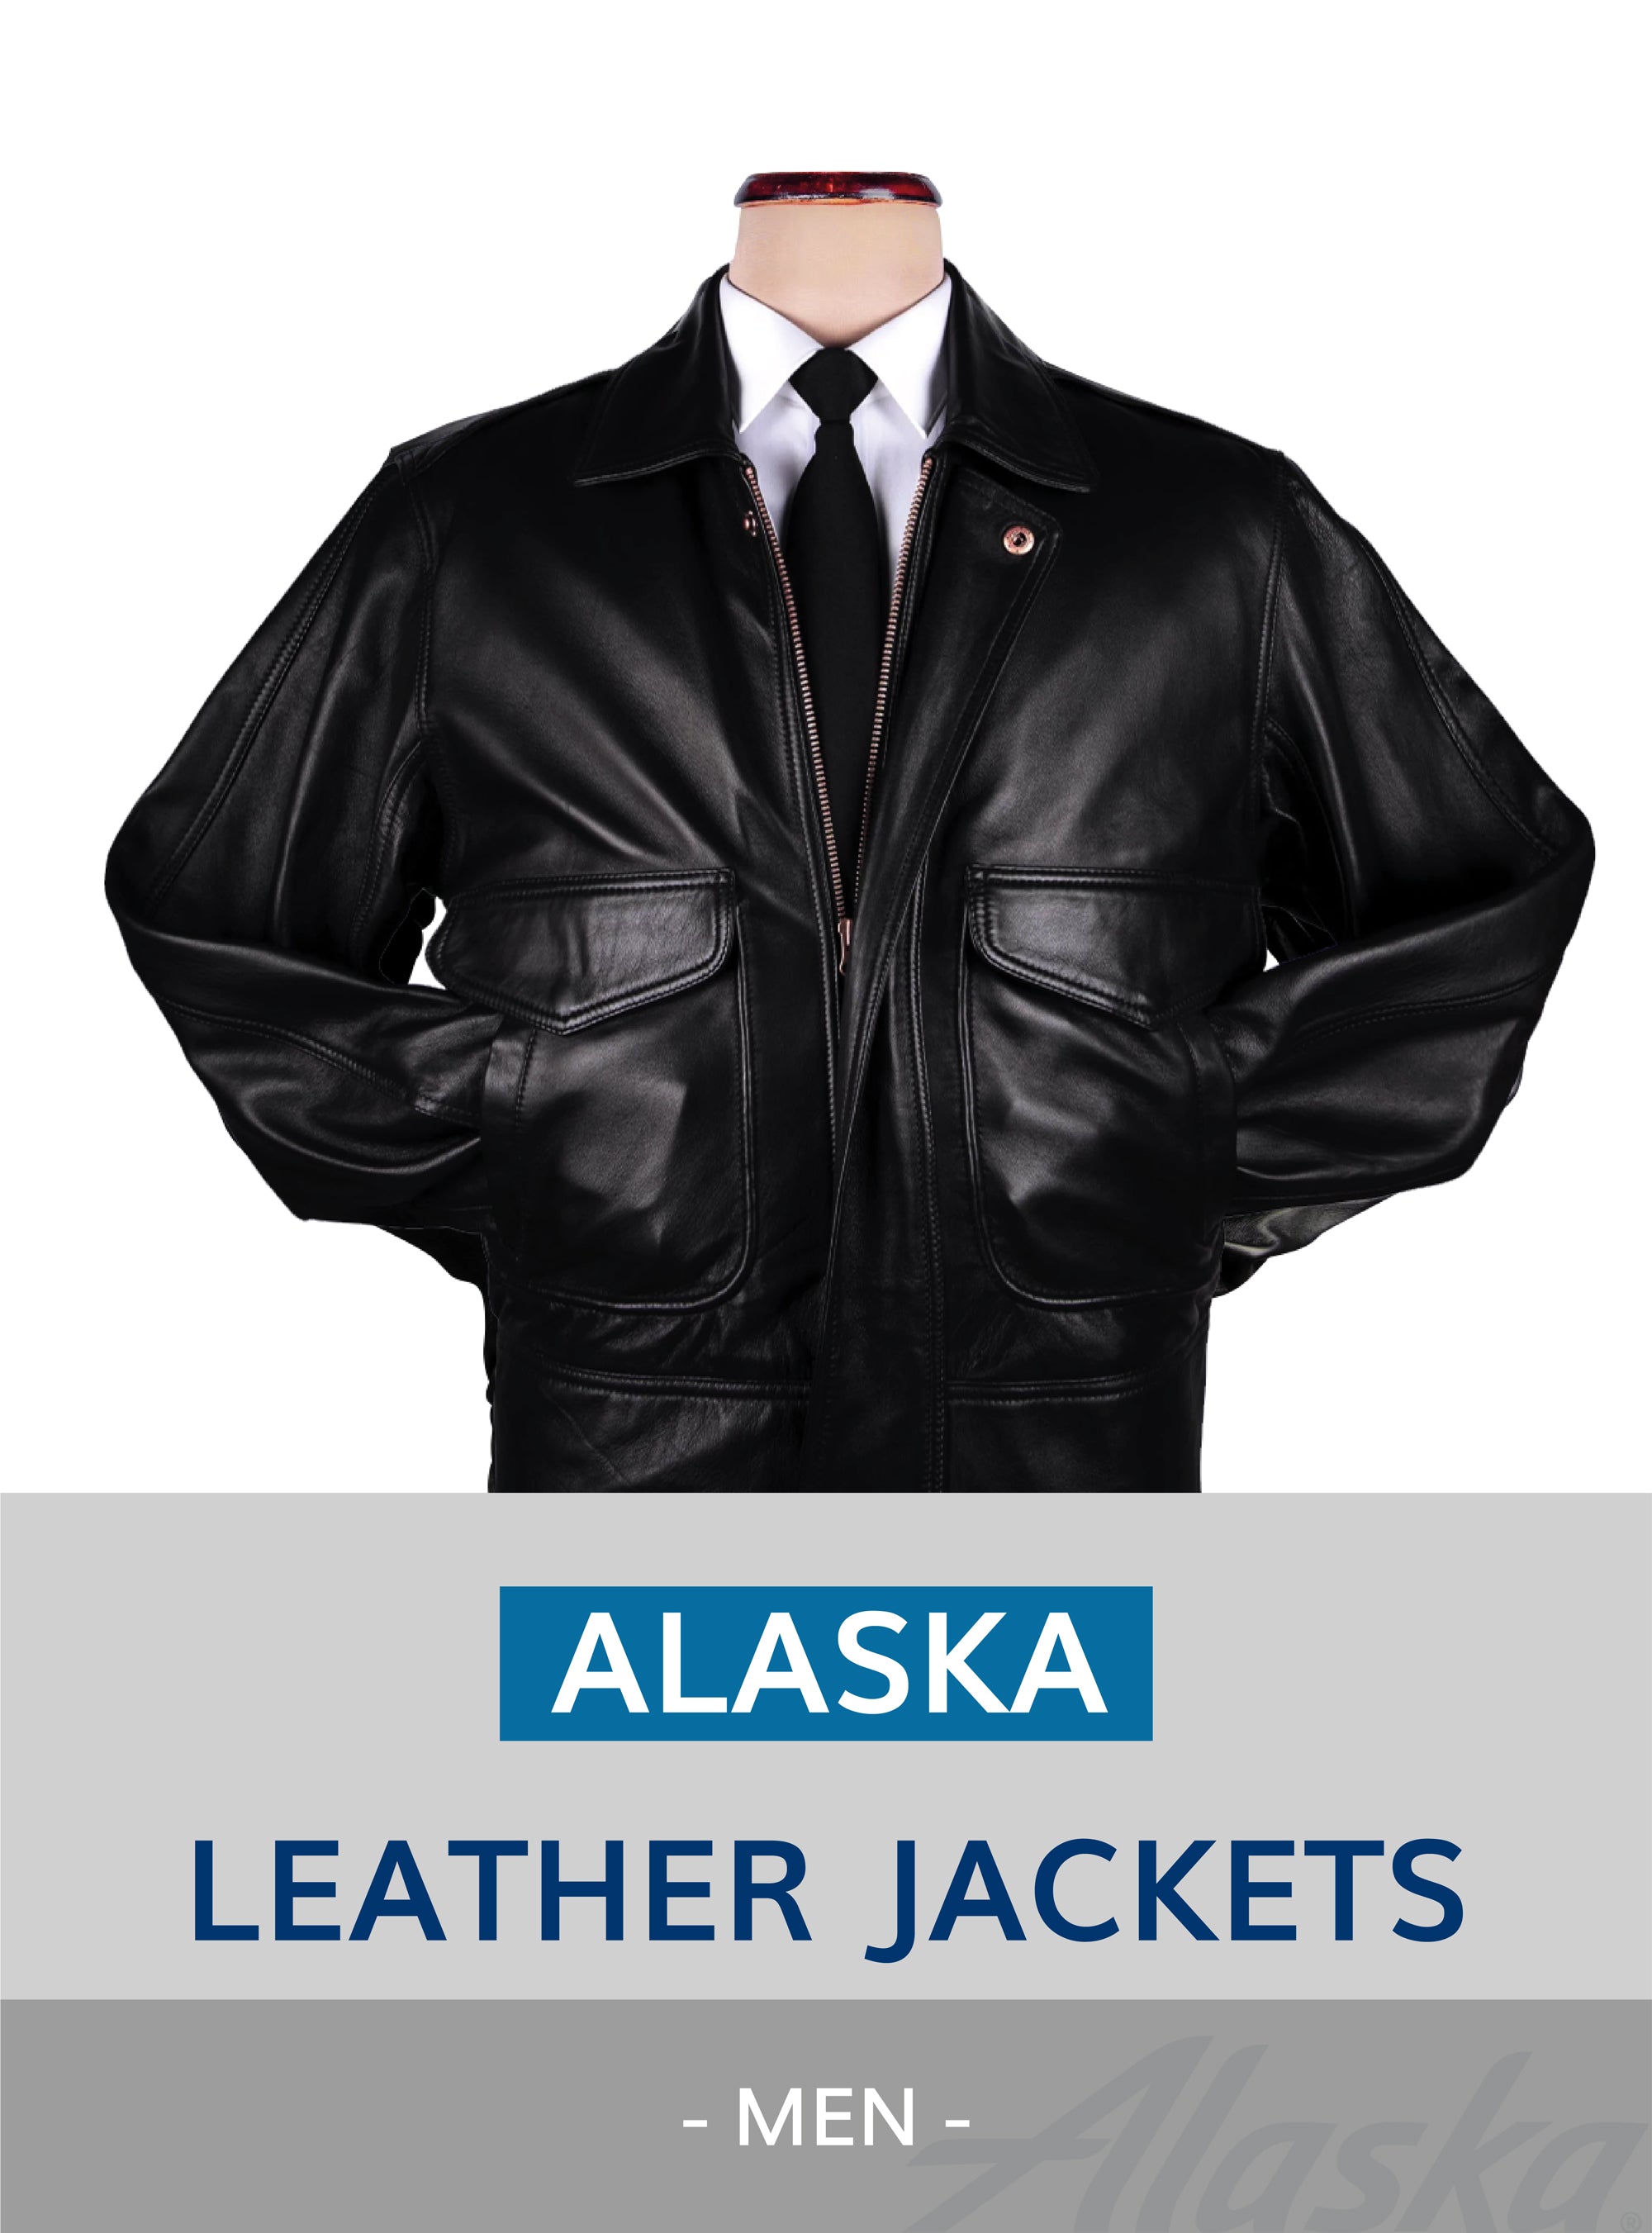 Alaska leather Jacket for men